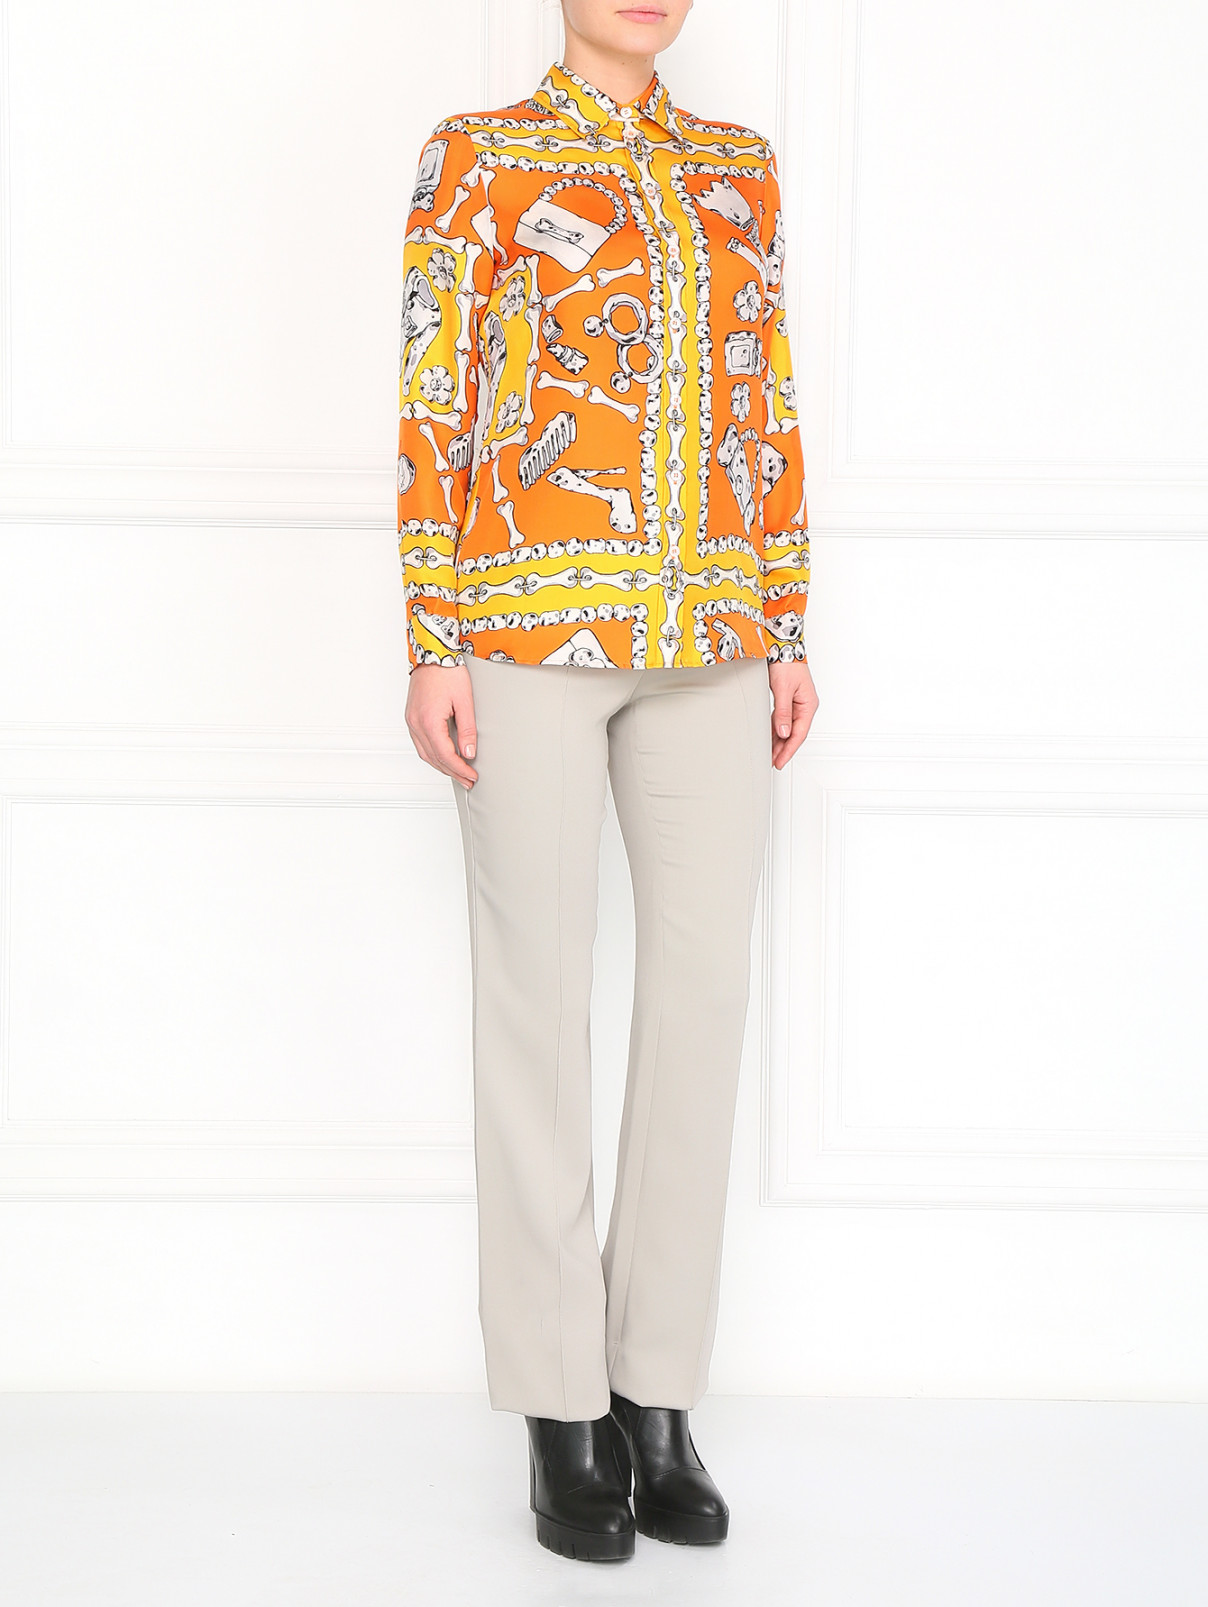 Прямые брюки со стрелками Versace 1969  –  Модель Общий вид  – Цвет:  Бежевый